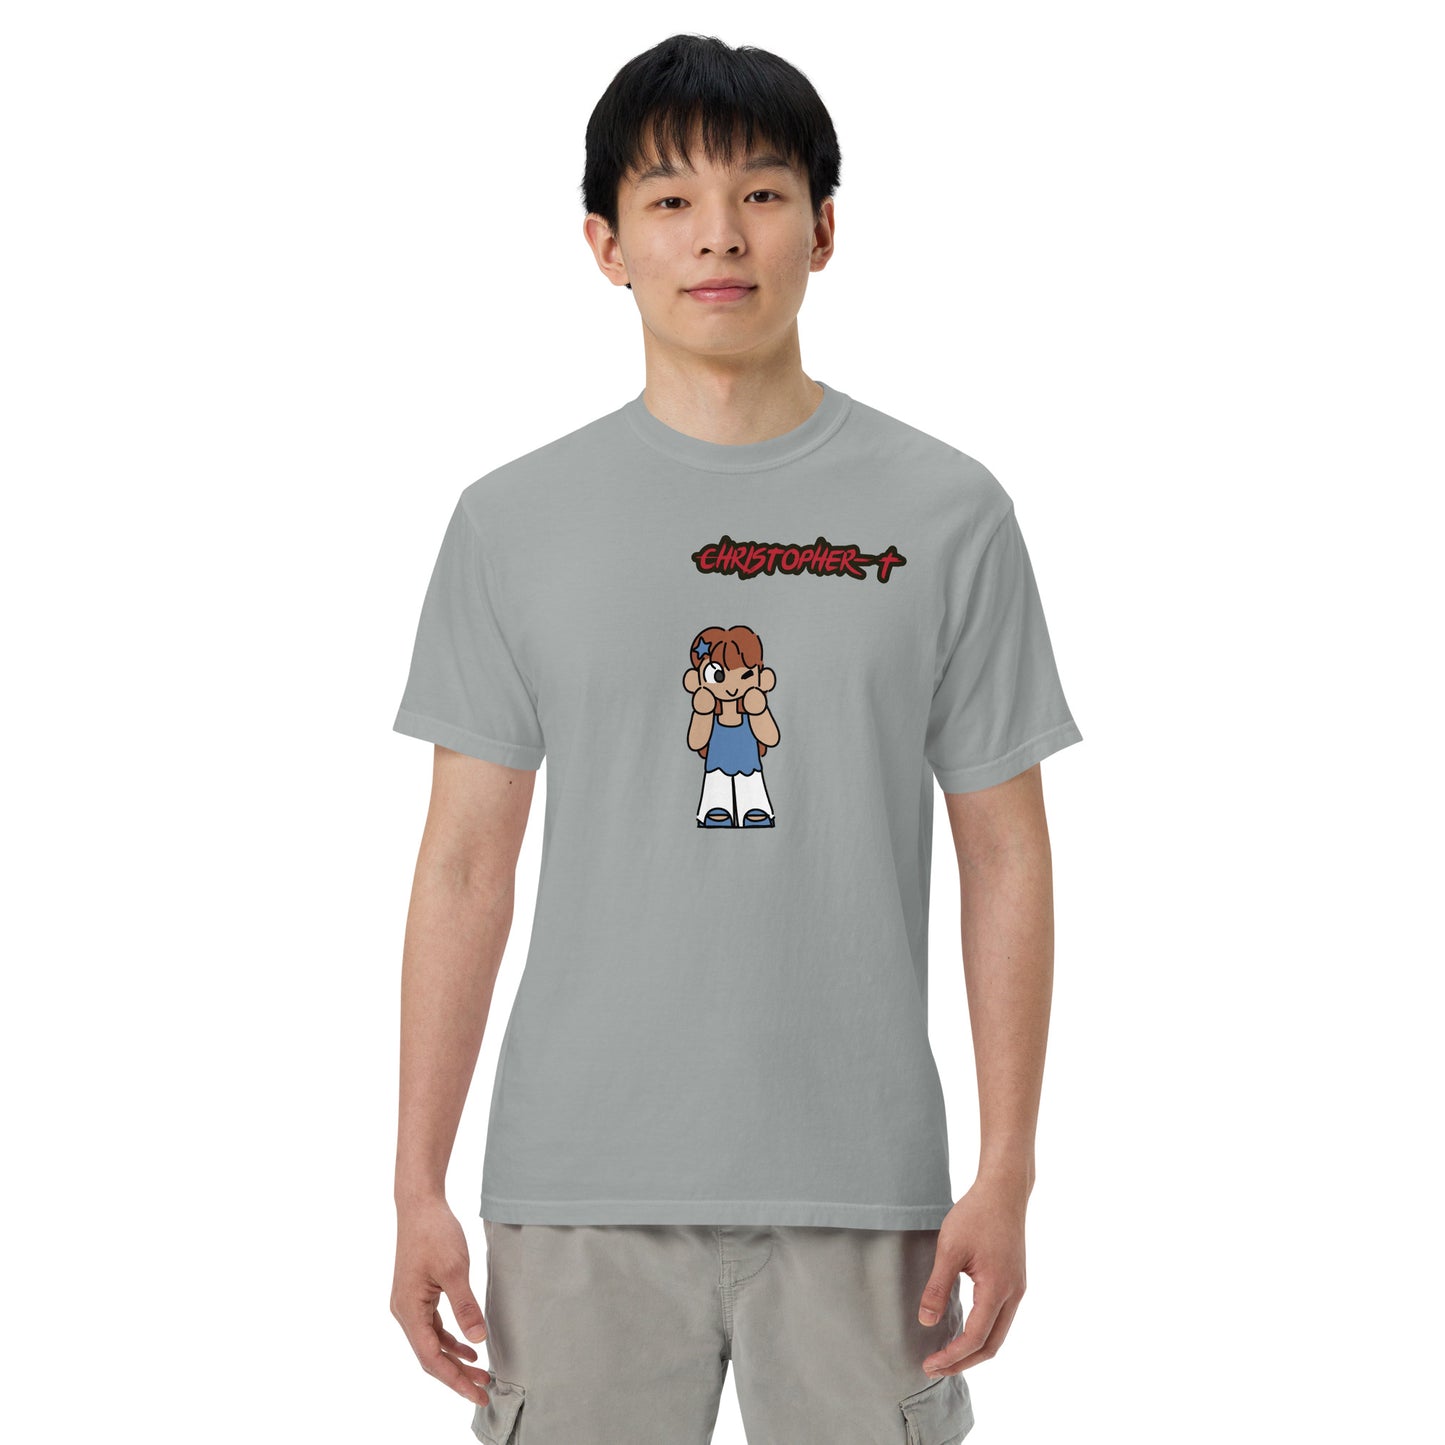 Christopher-T Unisex garment-dyed heavyweight t-shirt